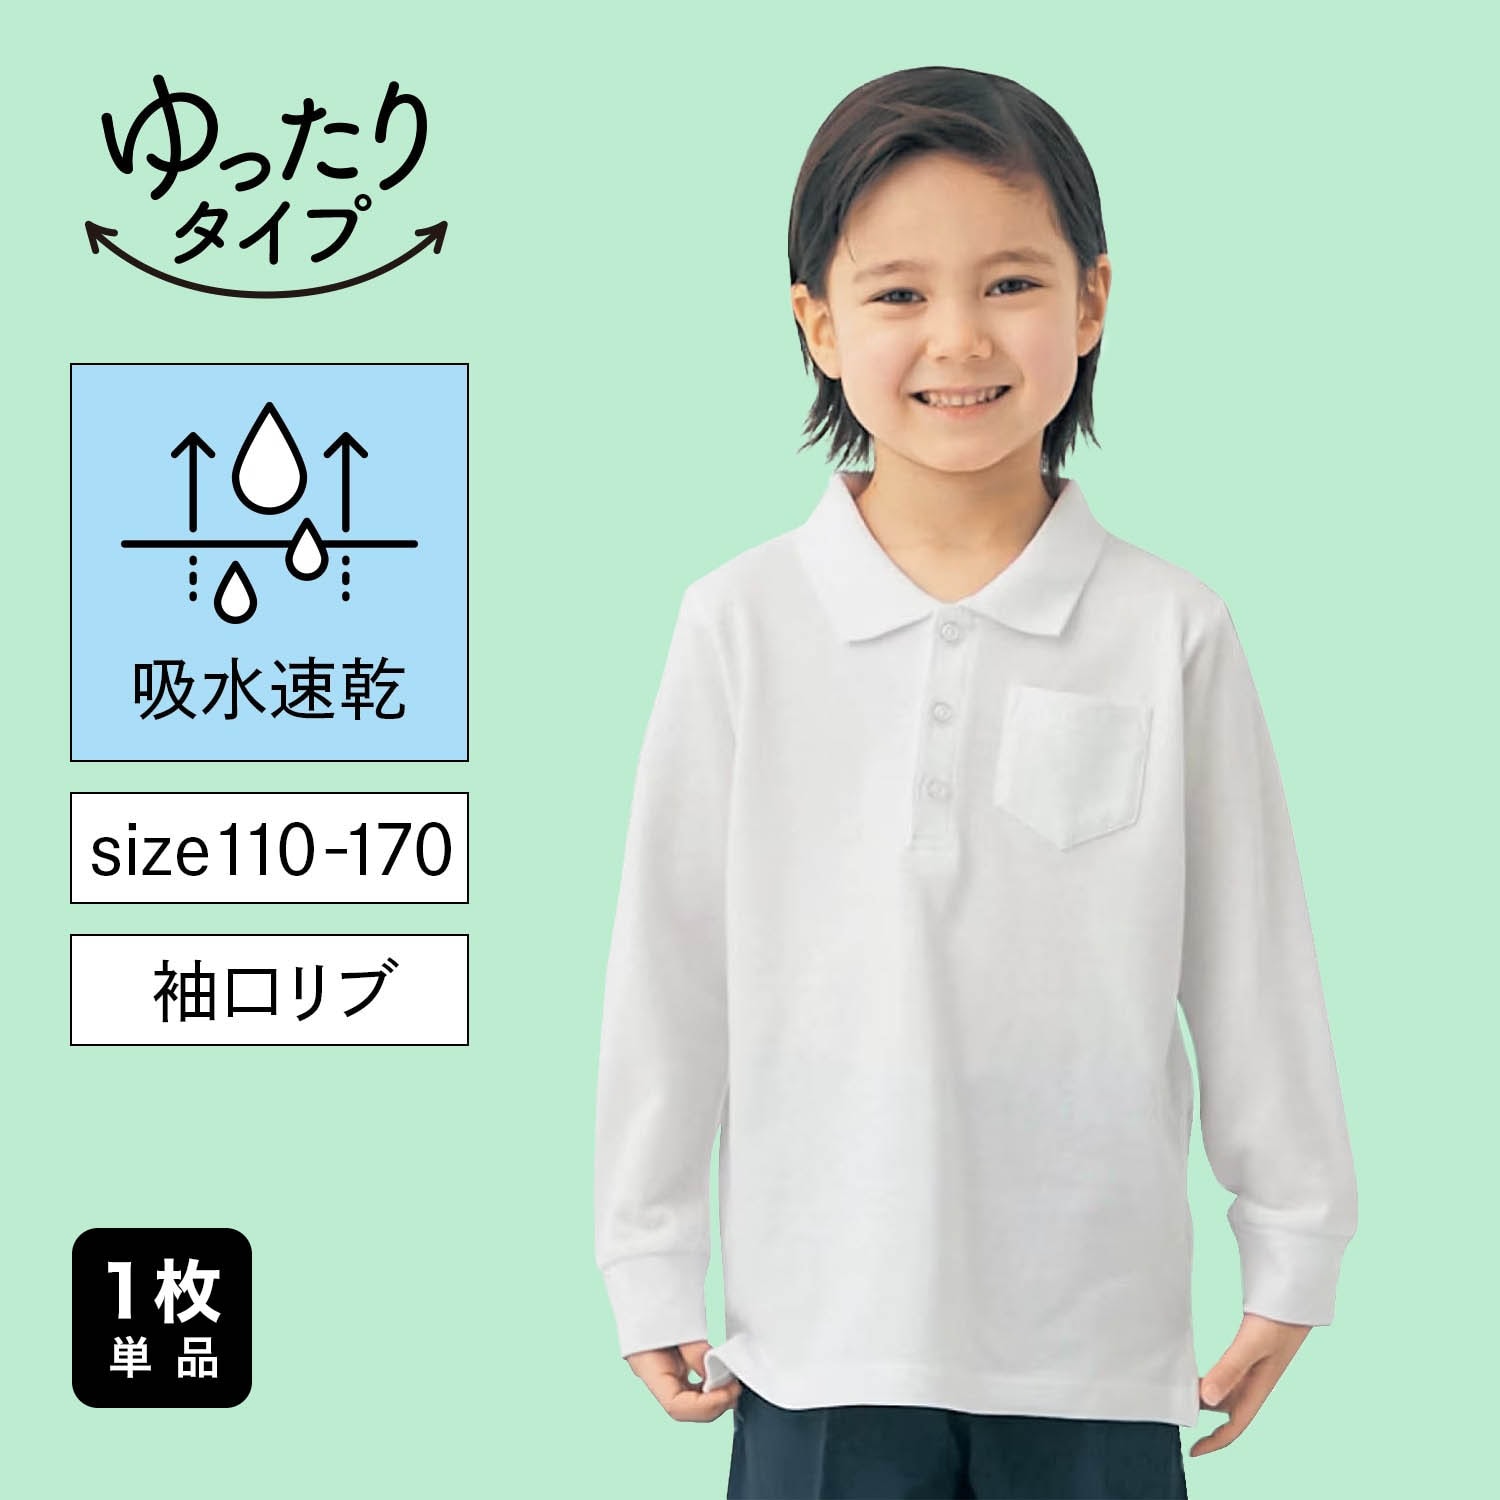 【ジータ/GITA】ドライ長袖ポロシャツ(ゆったり) 【制服 白】画像